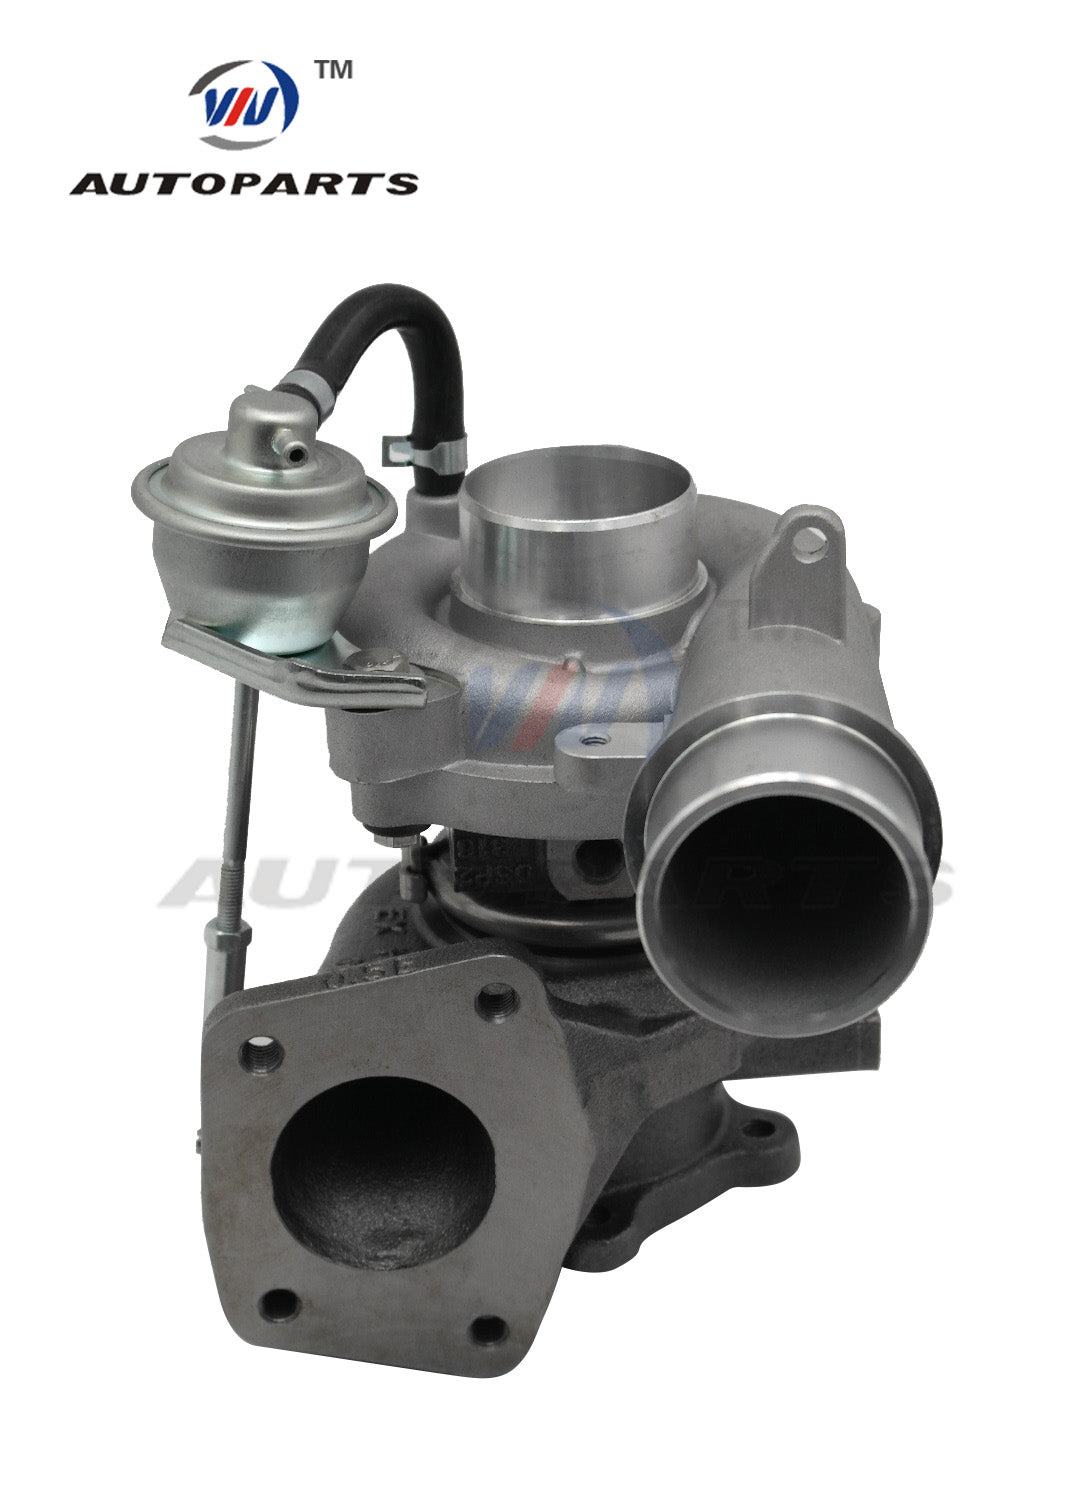 Turbocharger K0422-582 with billet wheel for Mazda CX7 CX-7 2.3L Gasoline Engine